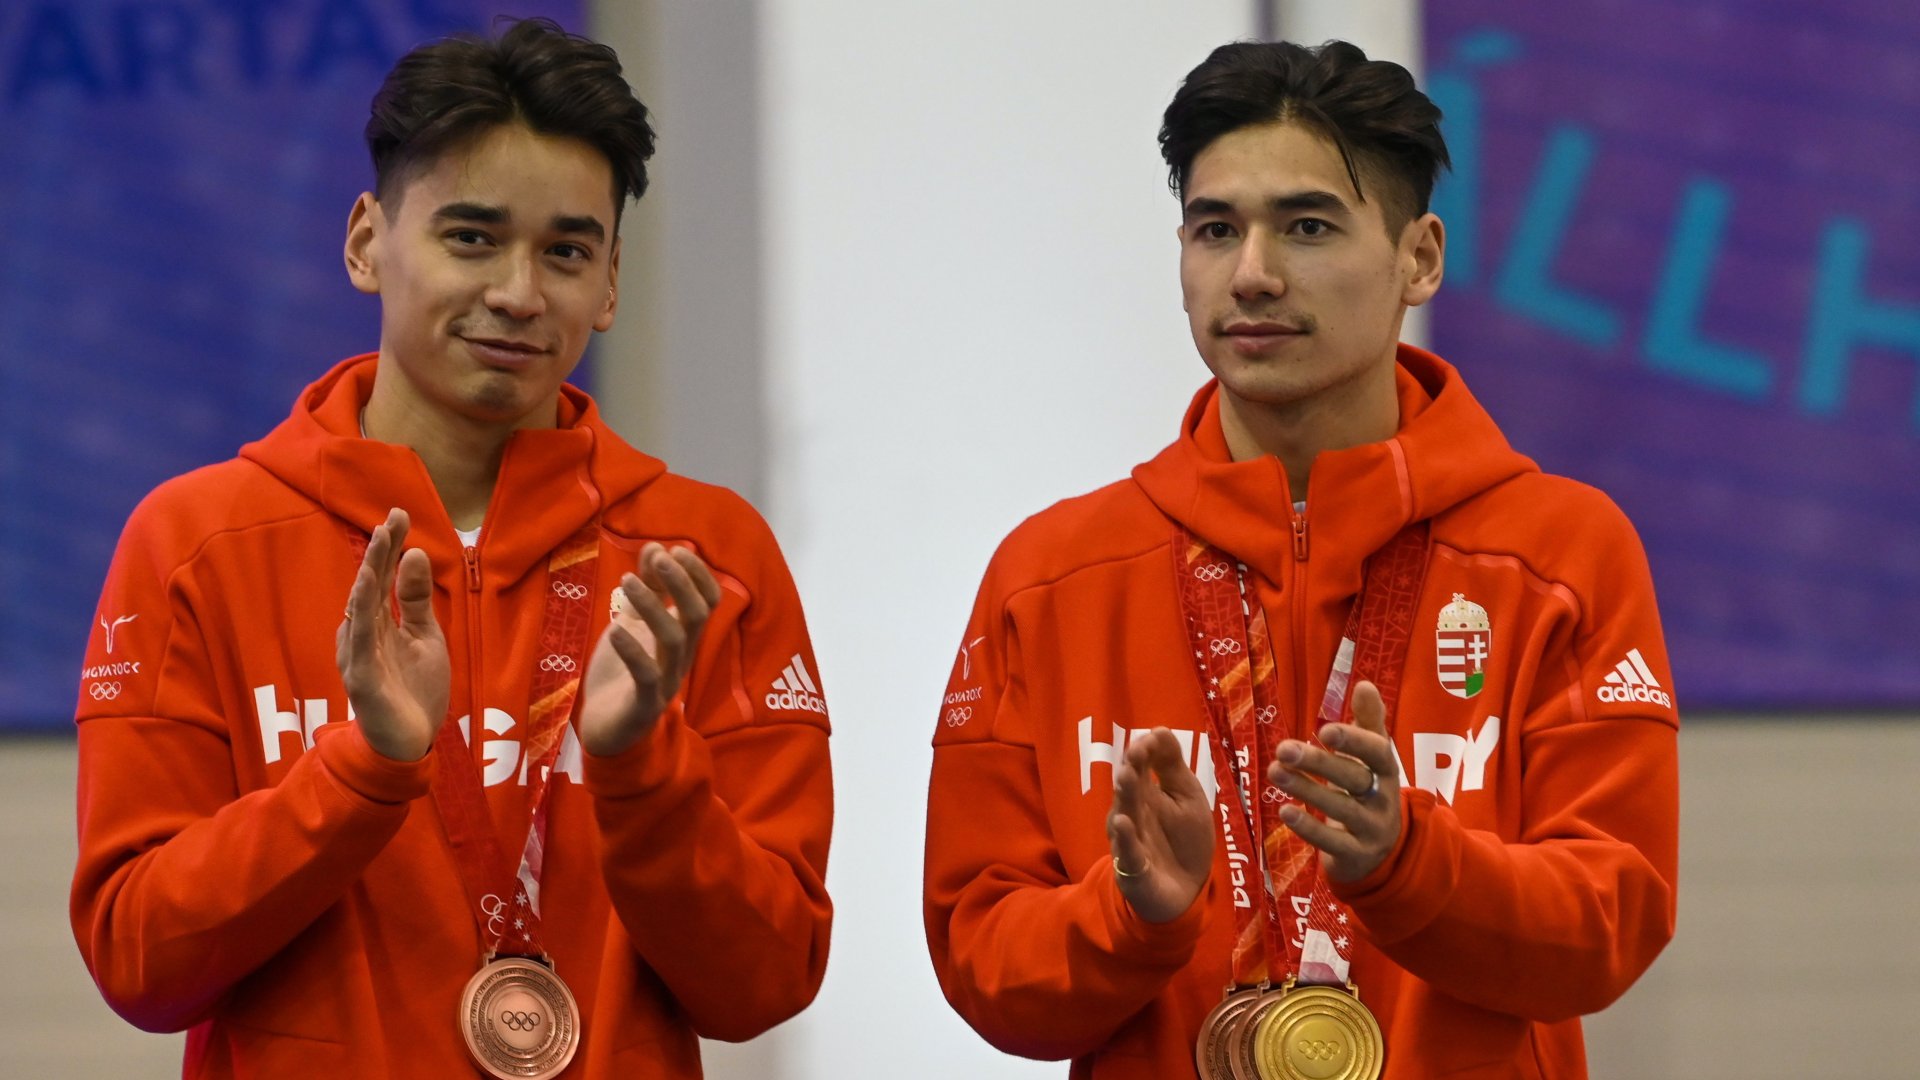 Liu Shaolin Sándor (b) és Liu Shaoang, a magyar rövidpályás gyorskorcsolya-válogatott tagjai a budapesti Gyakorló Jégcsarnokban, miután hazaérkeztek a pekingi téli olimpiáról 2022. február 18-án